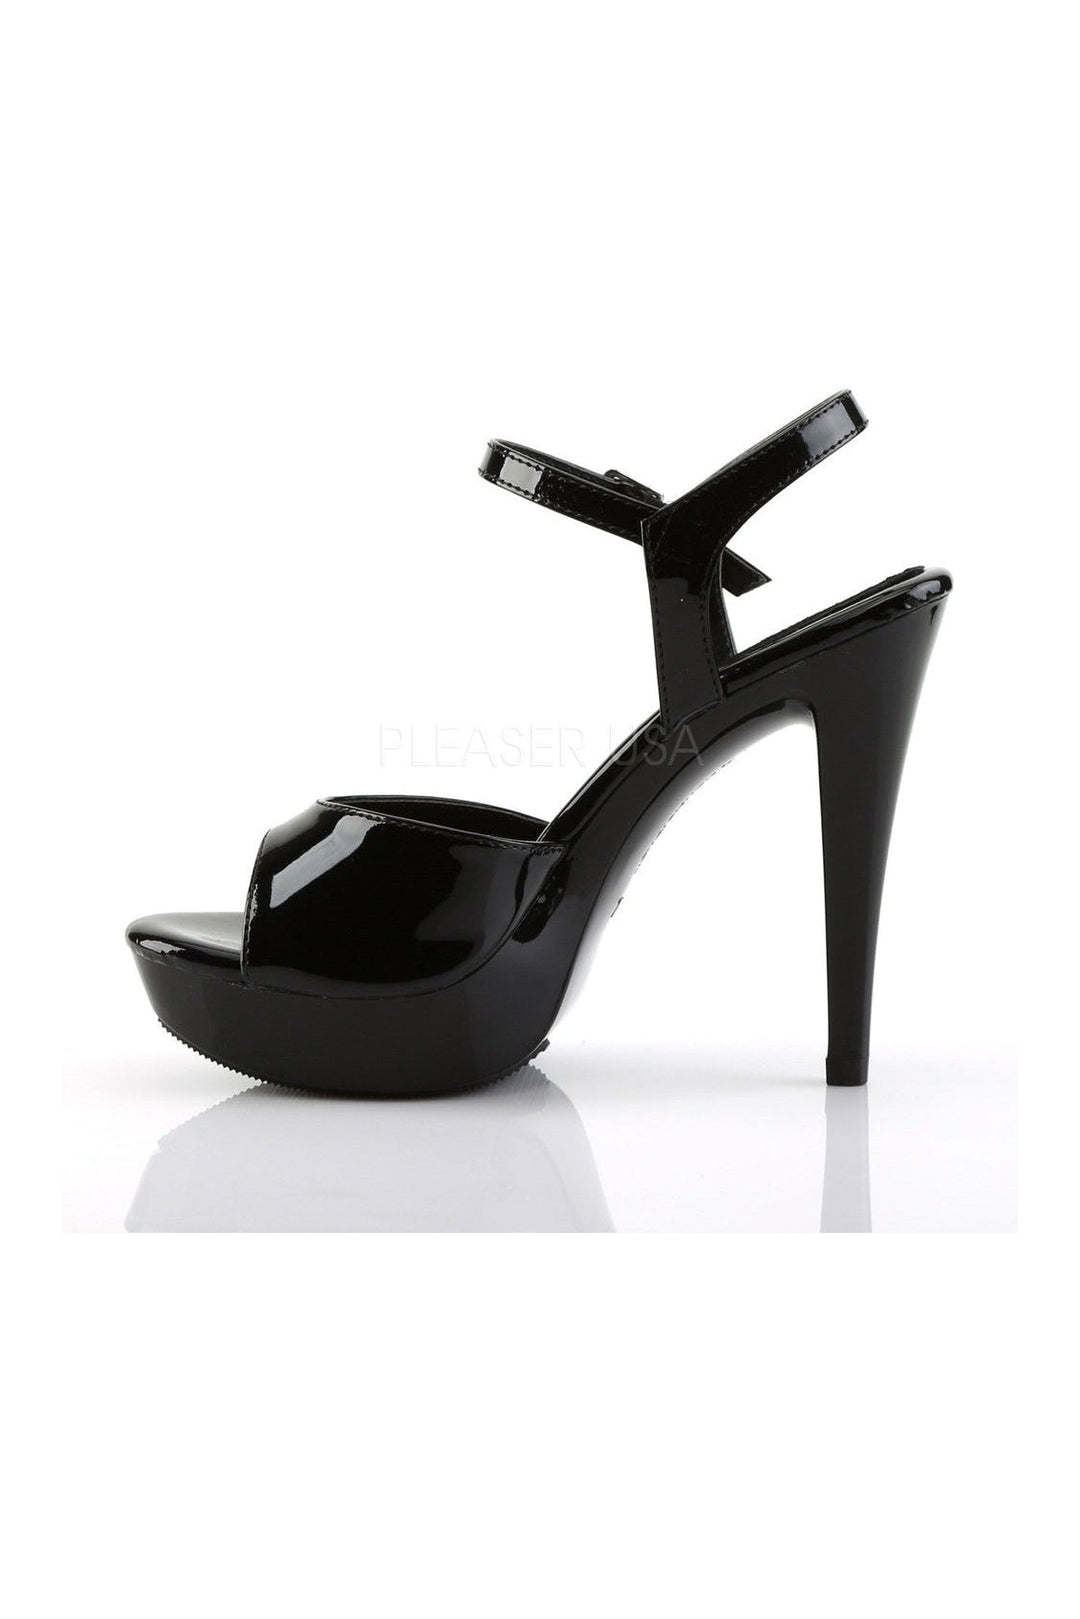 COCKTAIL-509 Platform Sandal | Black Patent-Fabulicious-Sandals-SEXYSHOES.COM